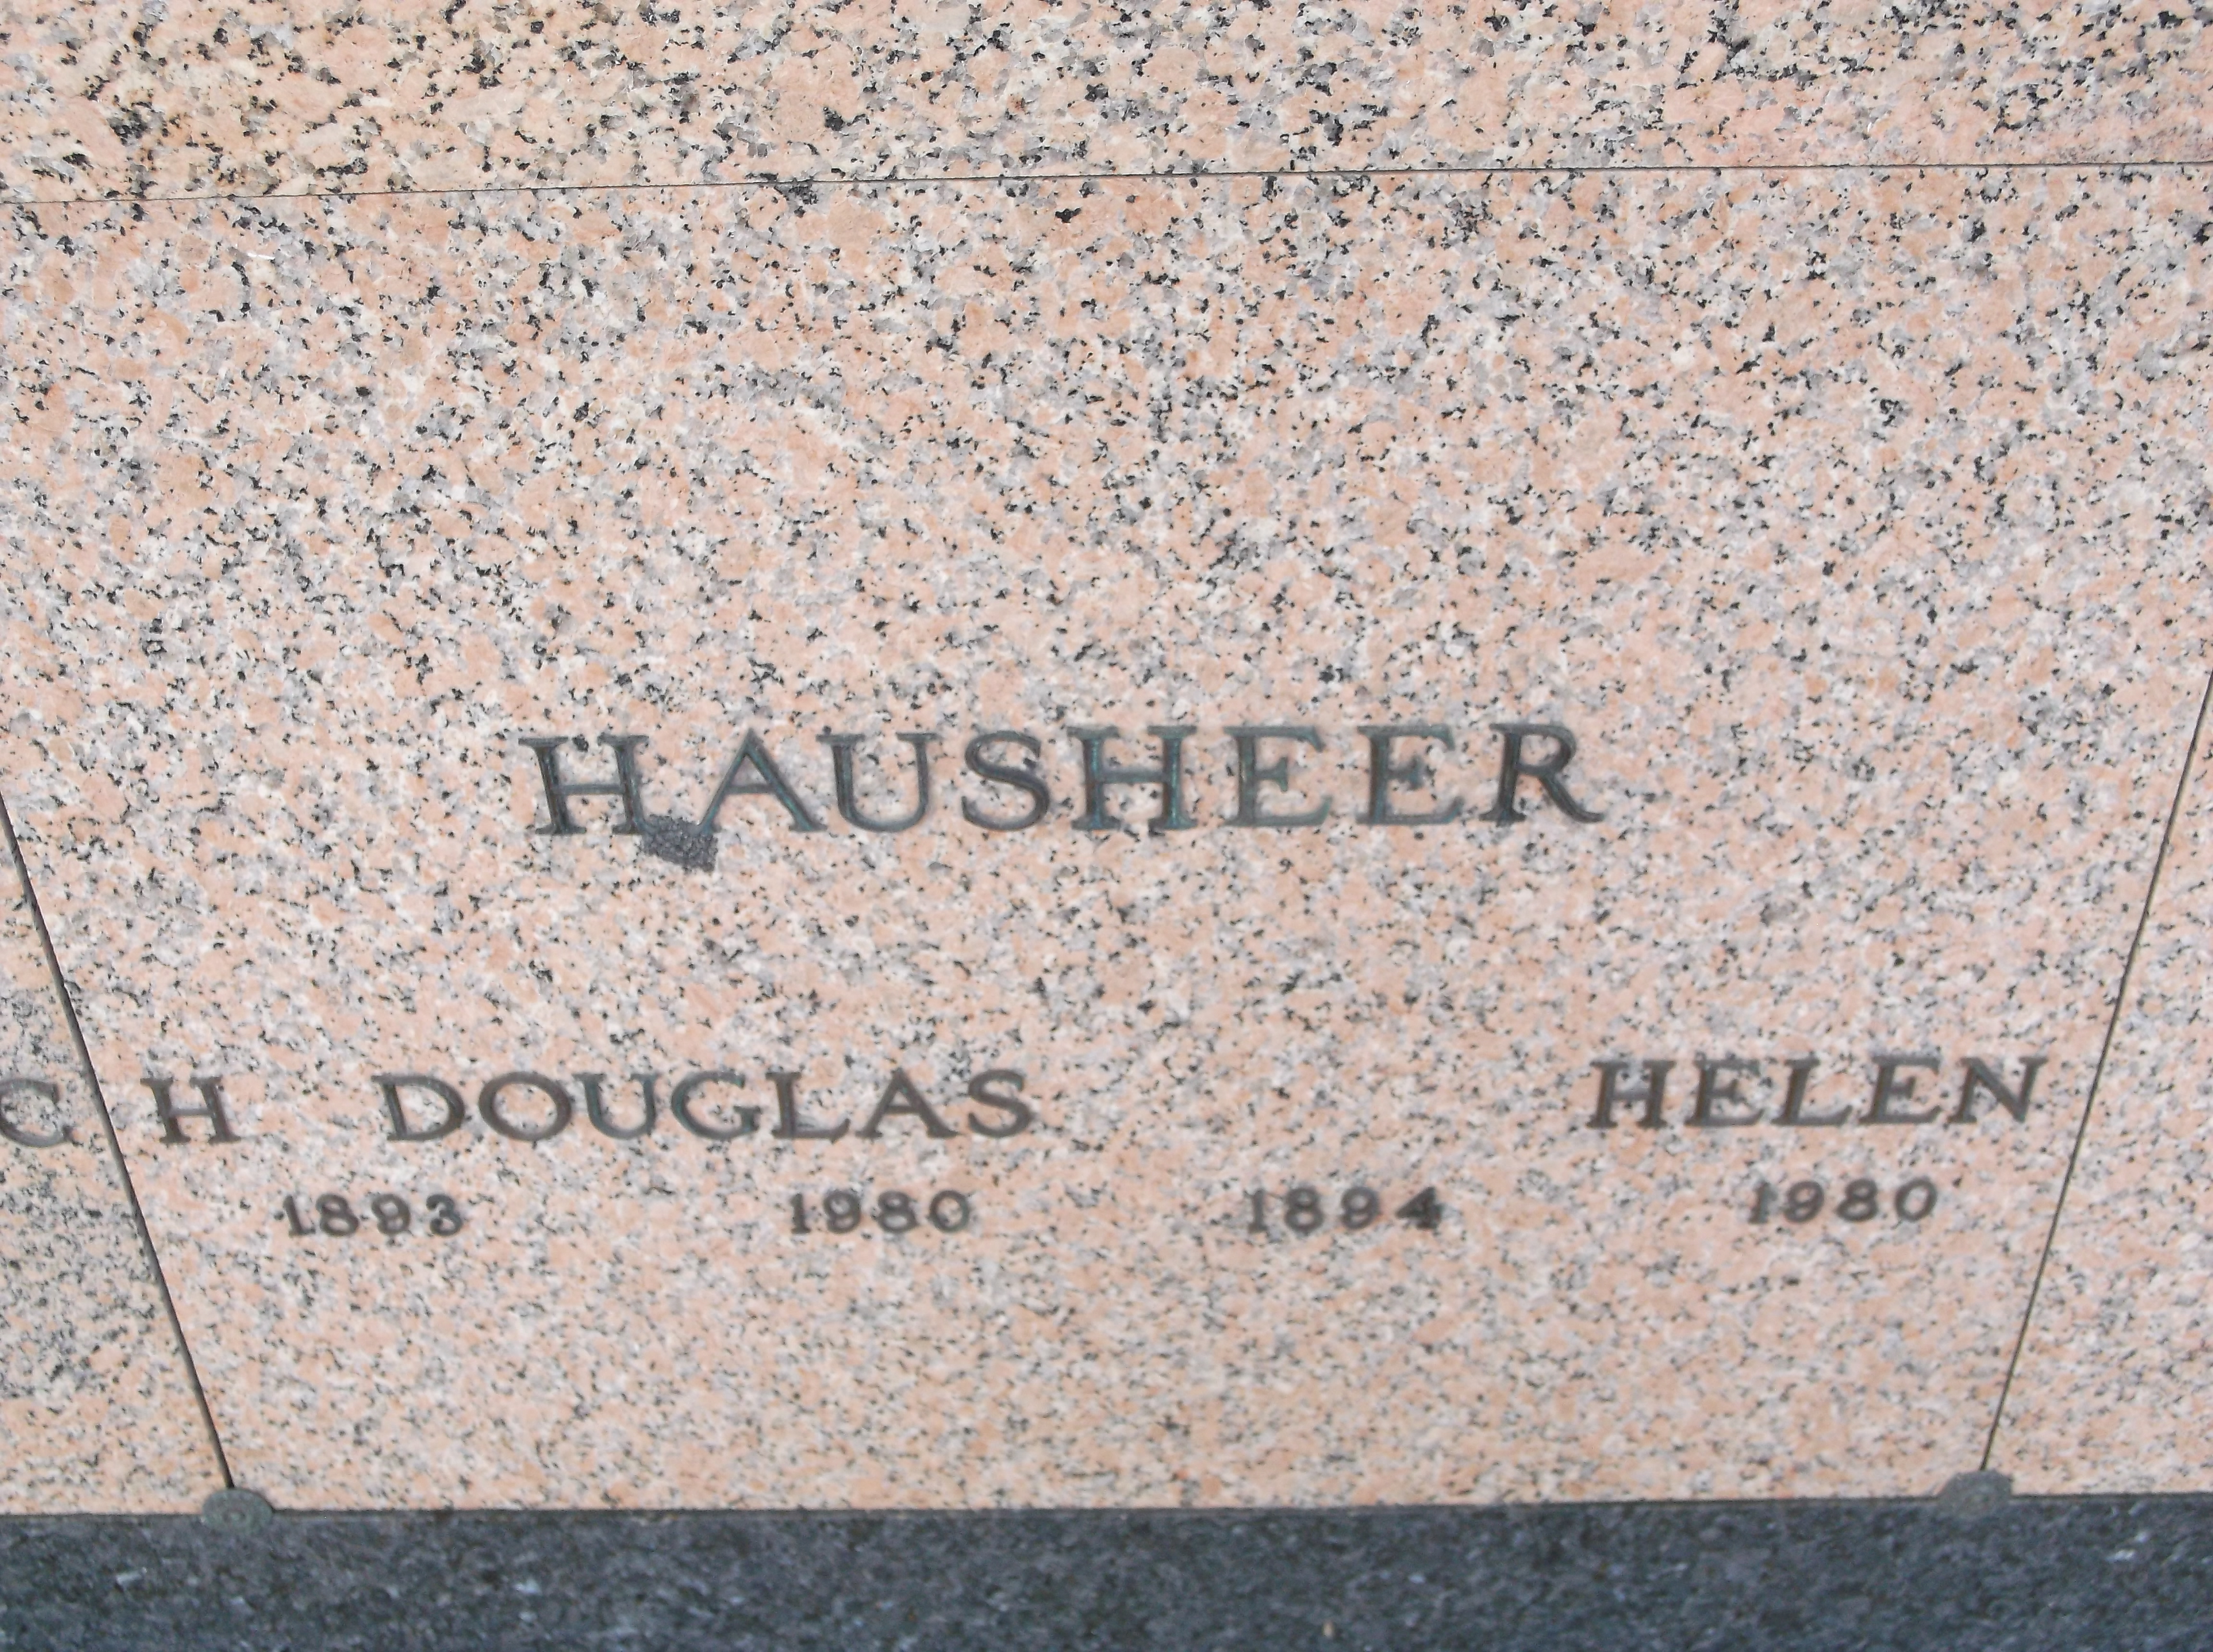 H Douglas Hausheer